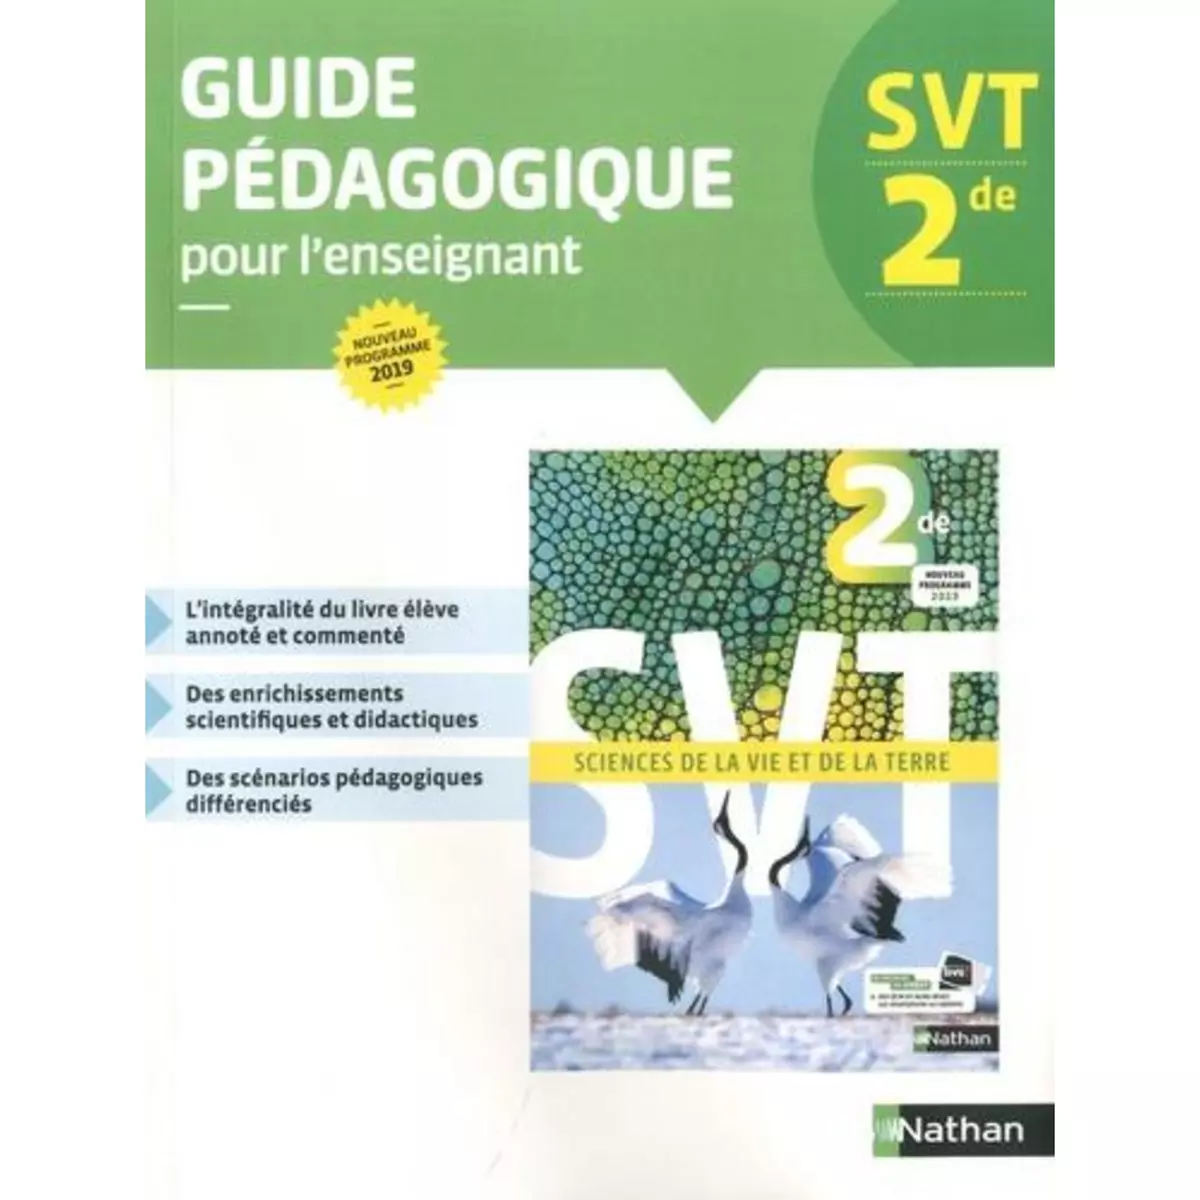  SVT 2DE. GUIDE PEDAGOGIQUE, EDITION 2019, Guillerme David